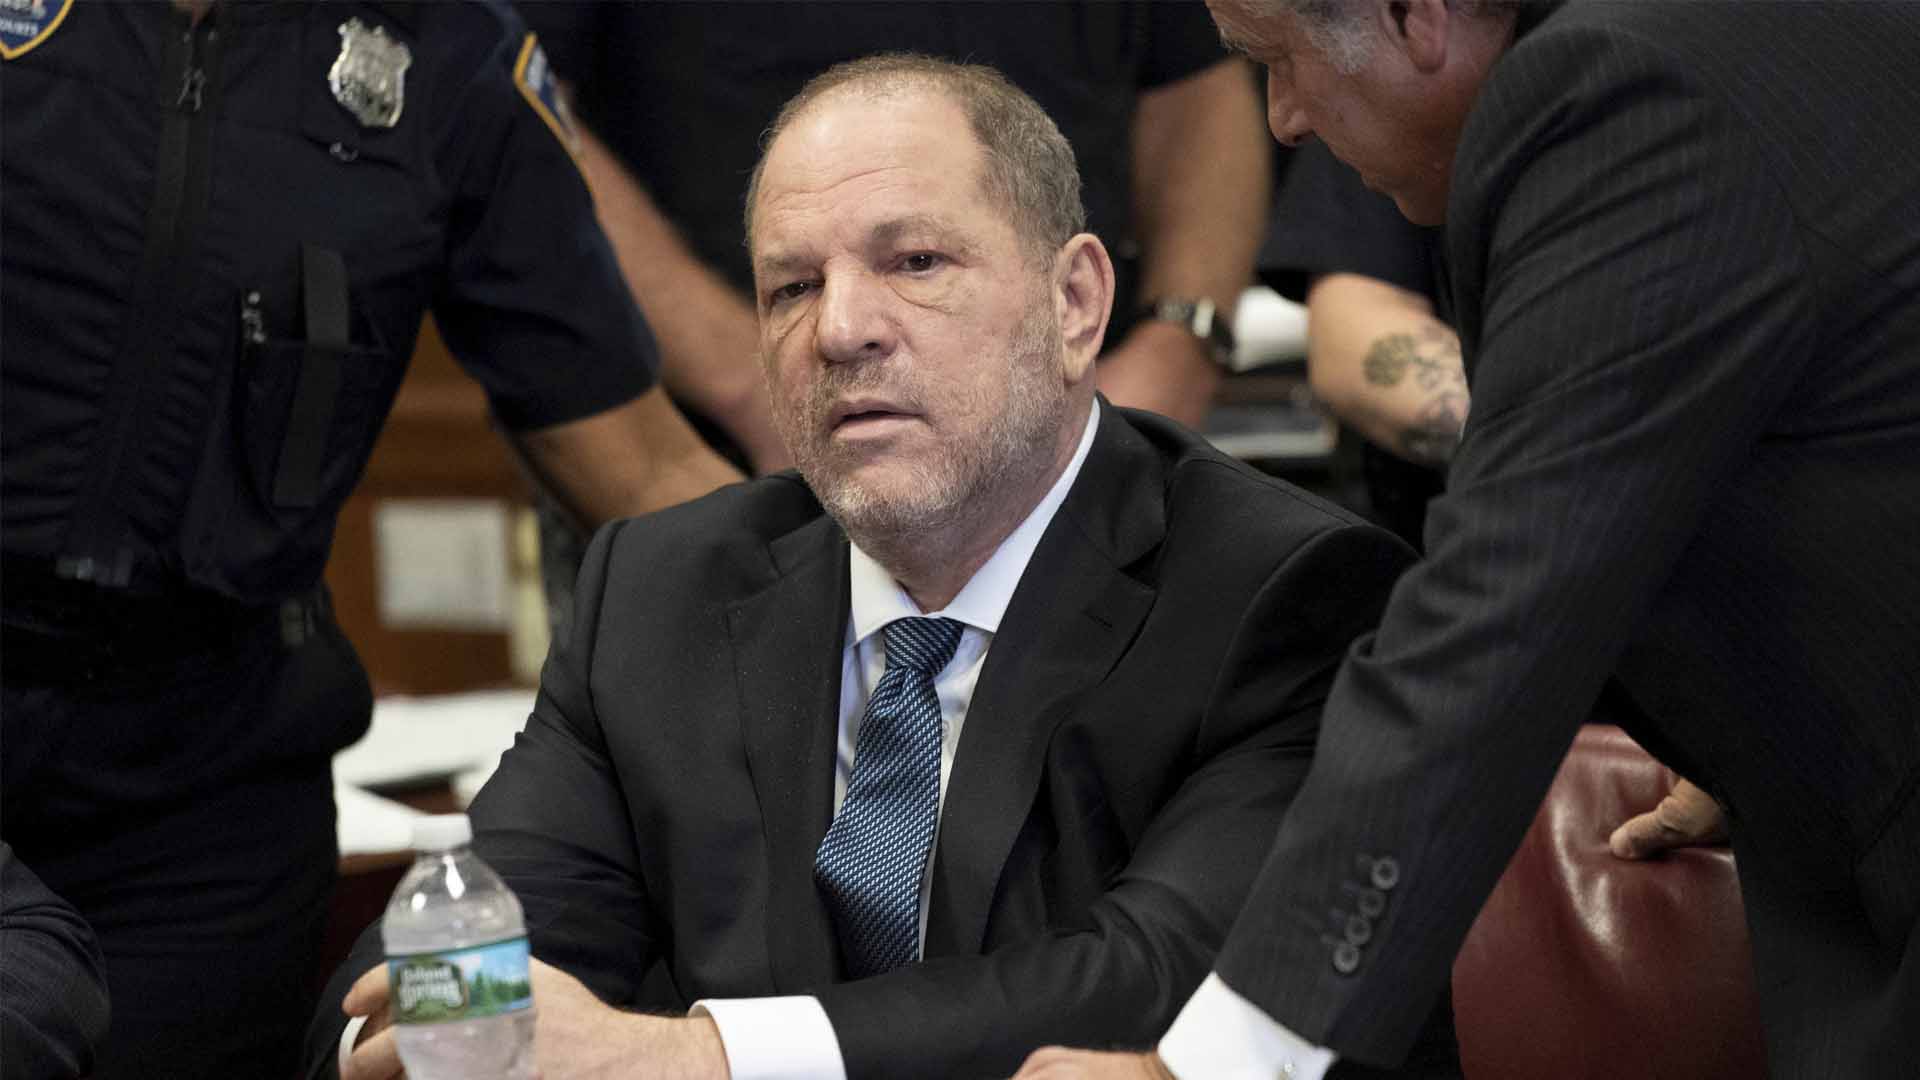 Nueva acusación contra Harvey Weinstein por abusar sexualmente de una menor